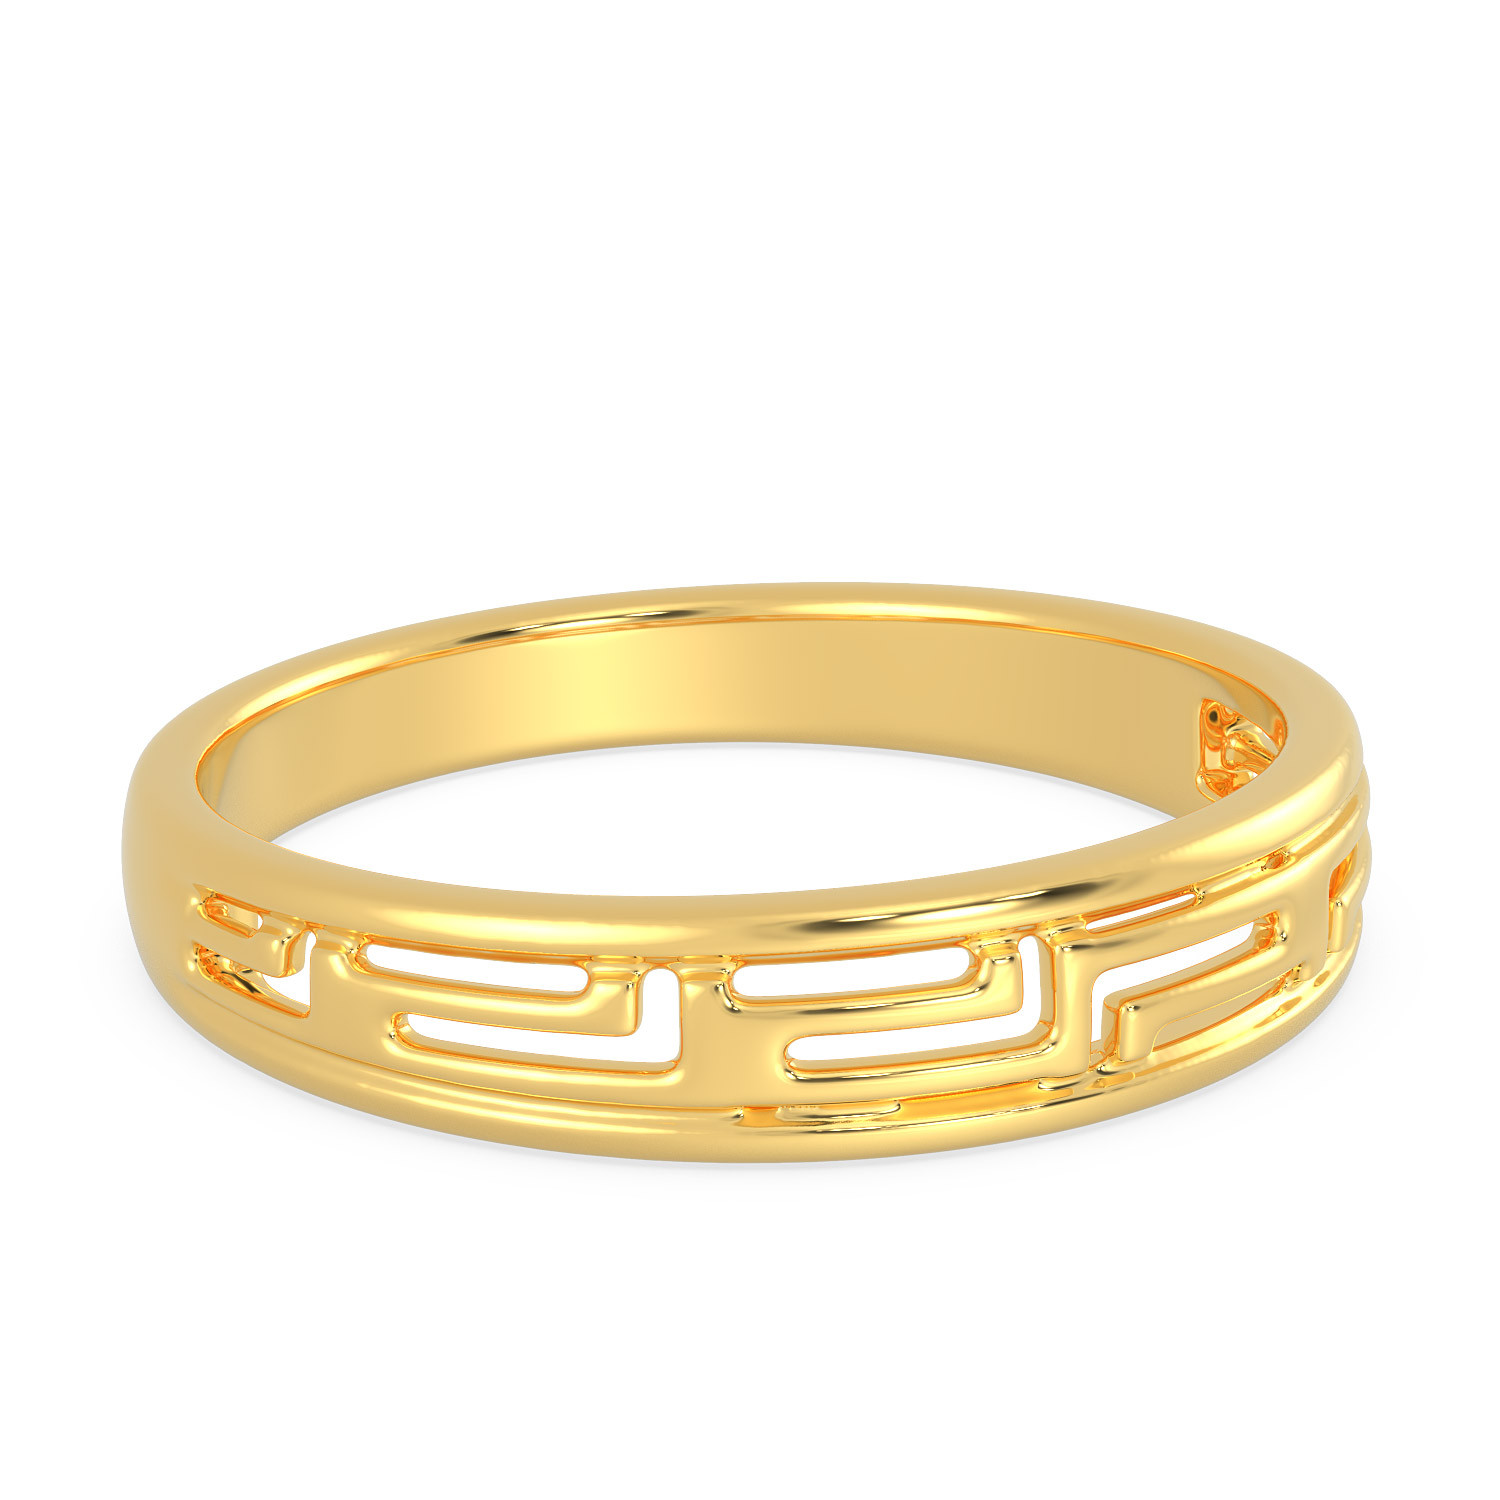 Buy Malabar Gold Ring MHAAAAAAEOQB for Women Online | Malabar Gold ...